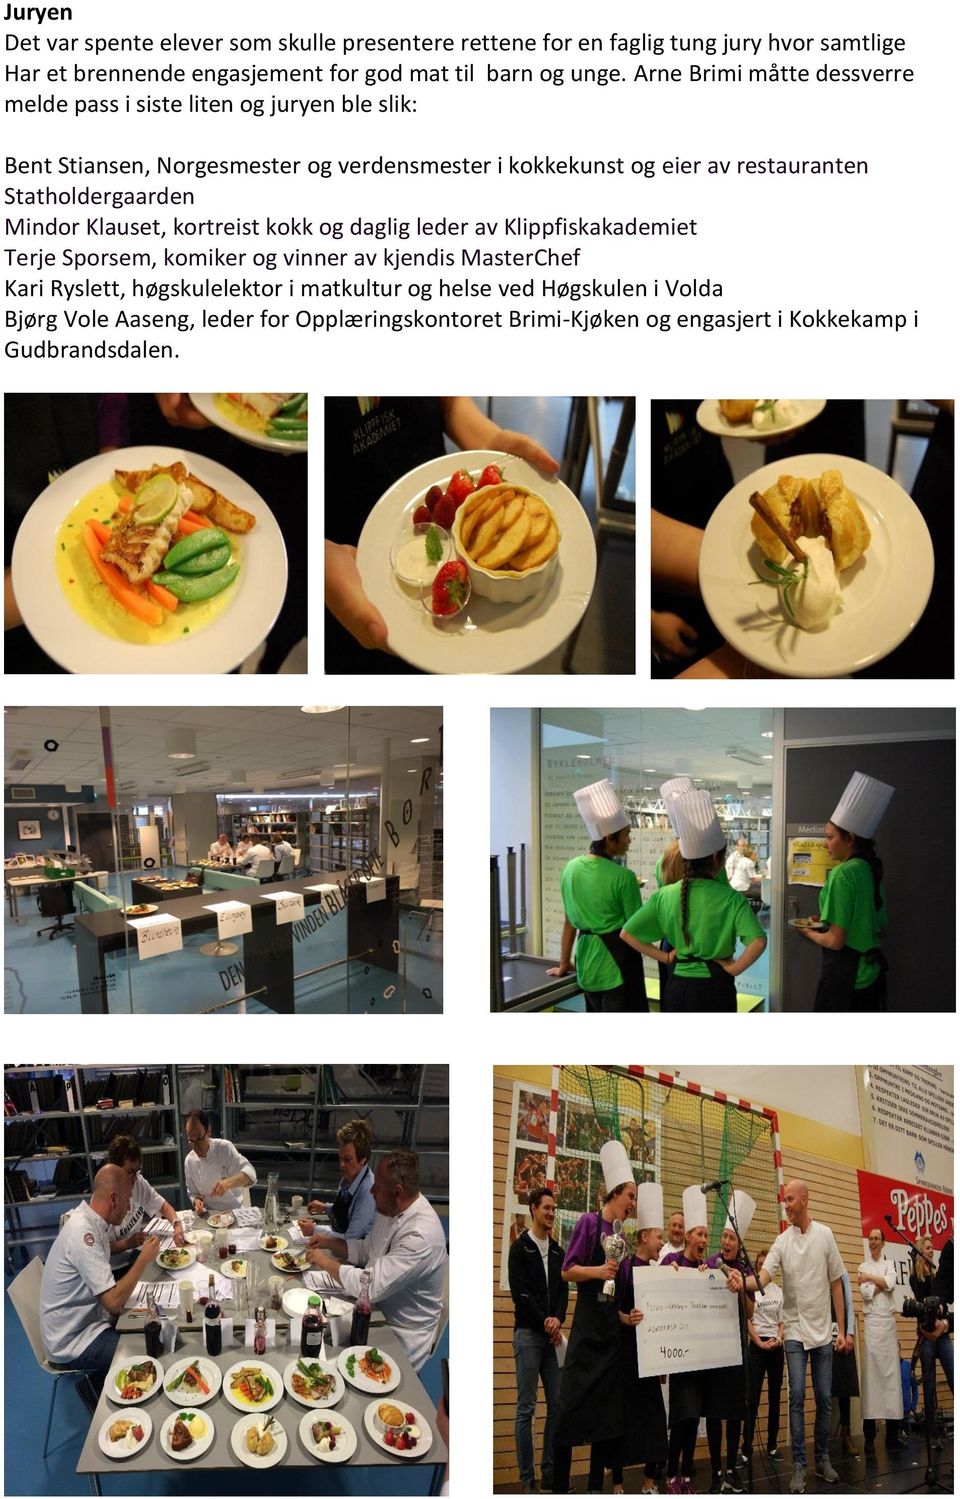 Mindor Klauset, kortreist kokk og daglig leder av Klippfiskakademiet Terje Sporsem, komiker og vinner av kjendis MasterChef Kari Ryslett, høgskulelektor i matkultur og helse